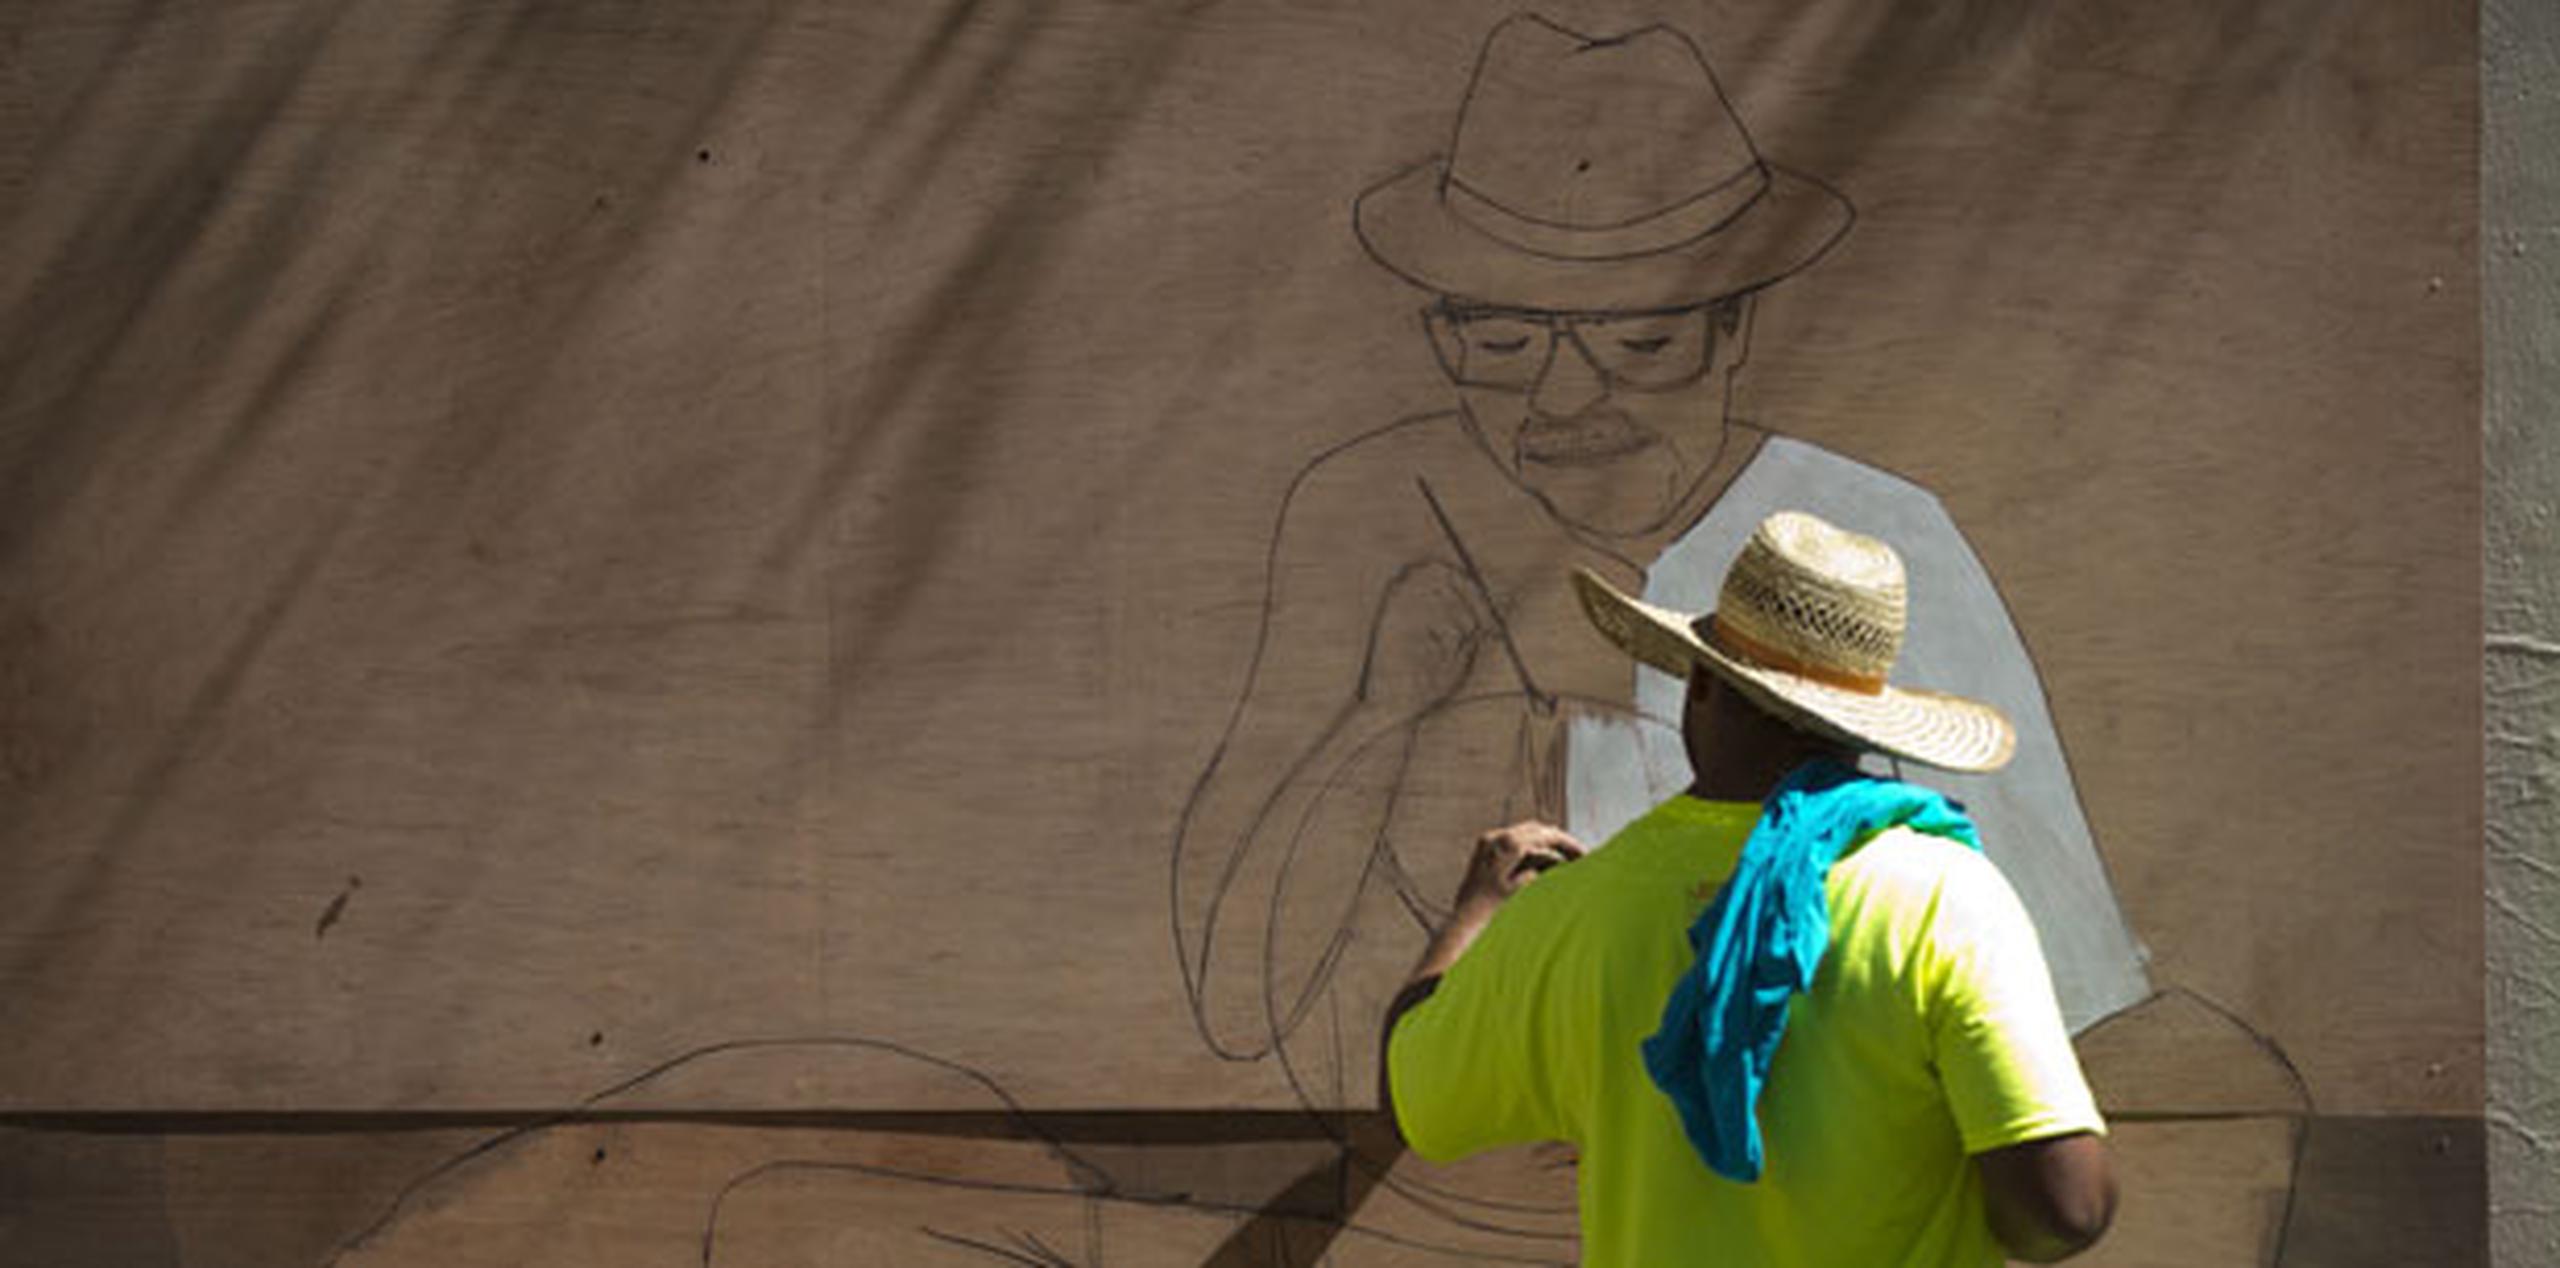 Otra de sus funciones será darle continuidad a los trabajos de la Campechada 2014. En la foto, un artista trabaja en un mural cerca de la calle San Sebastian durante la Campechada 2013. (Archivo)